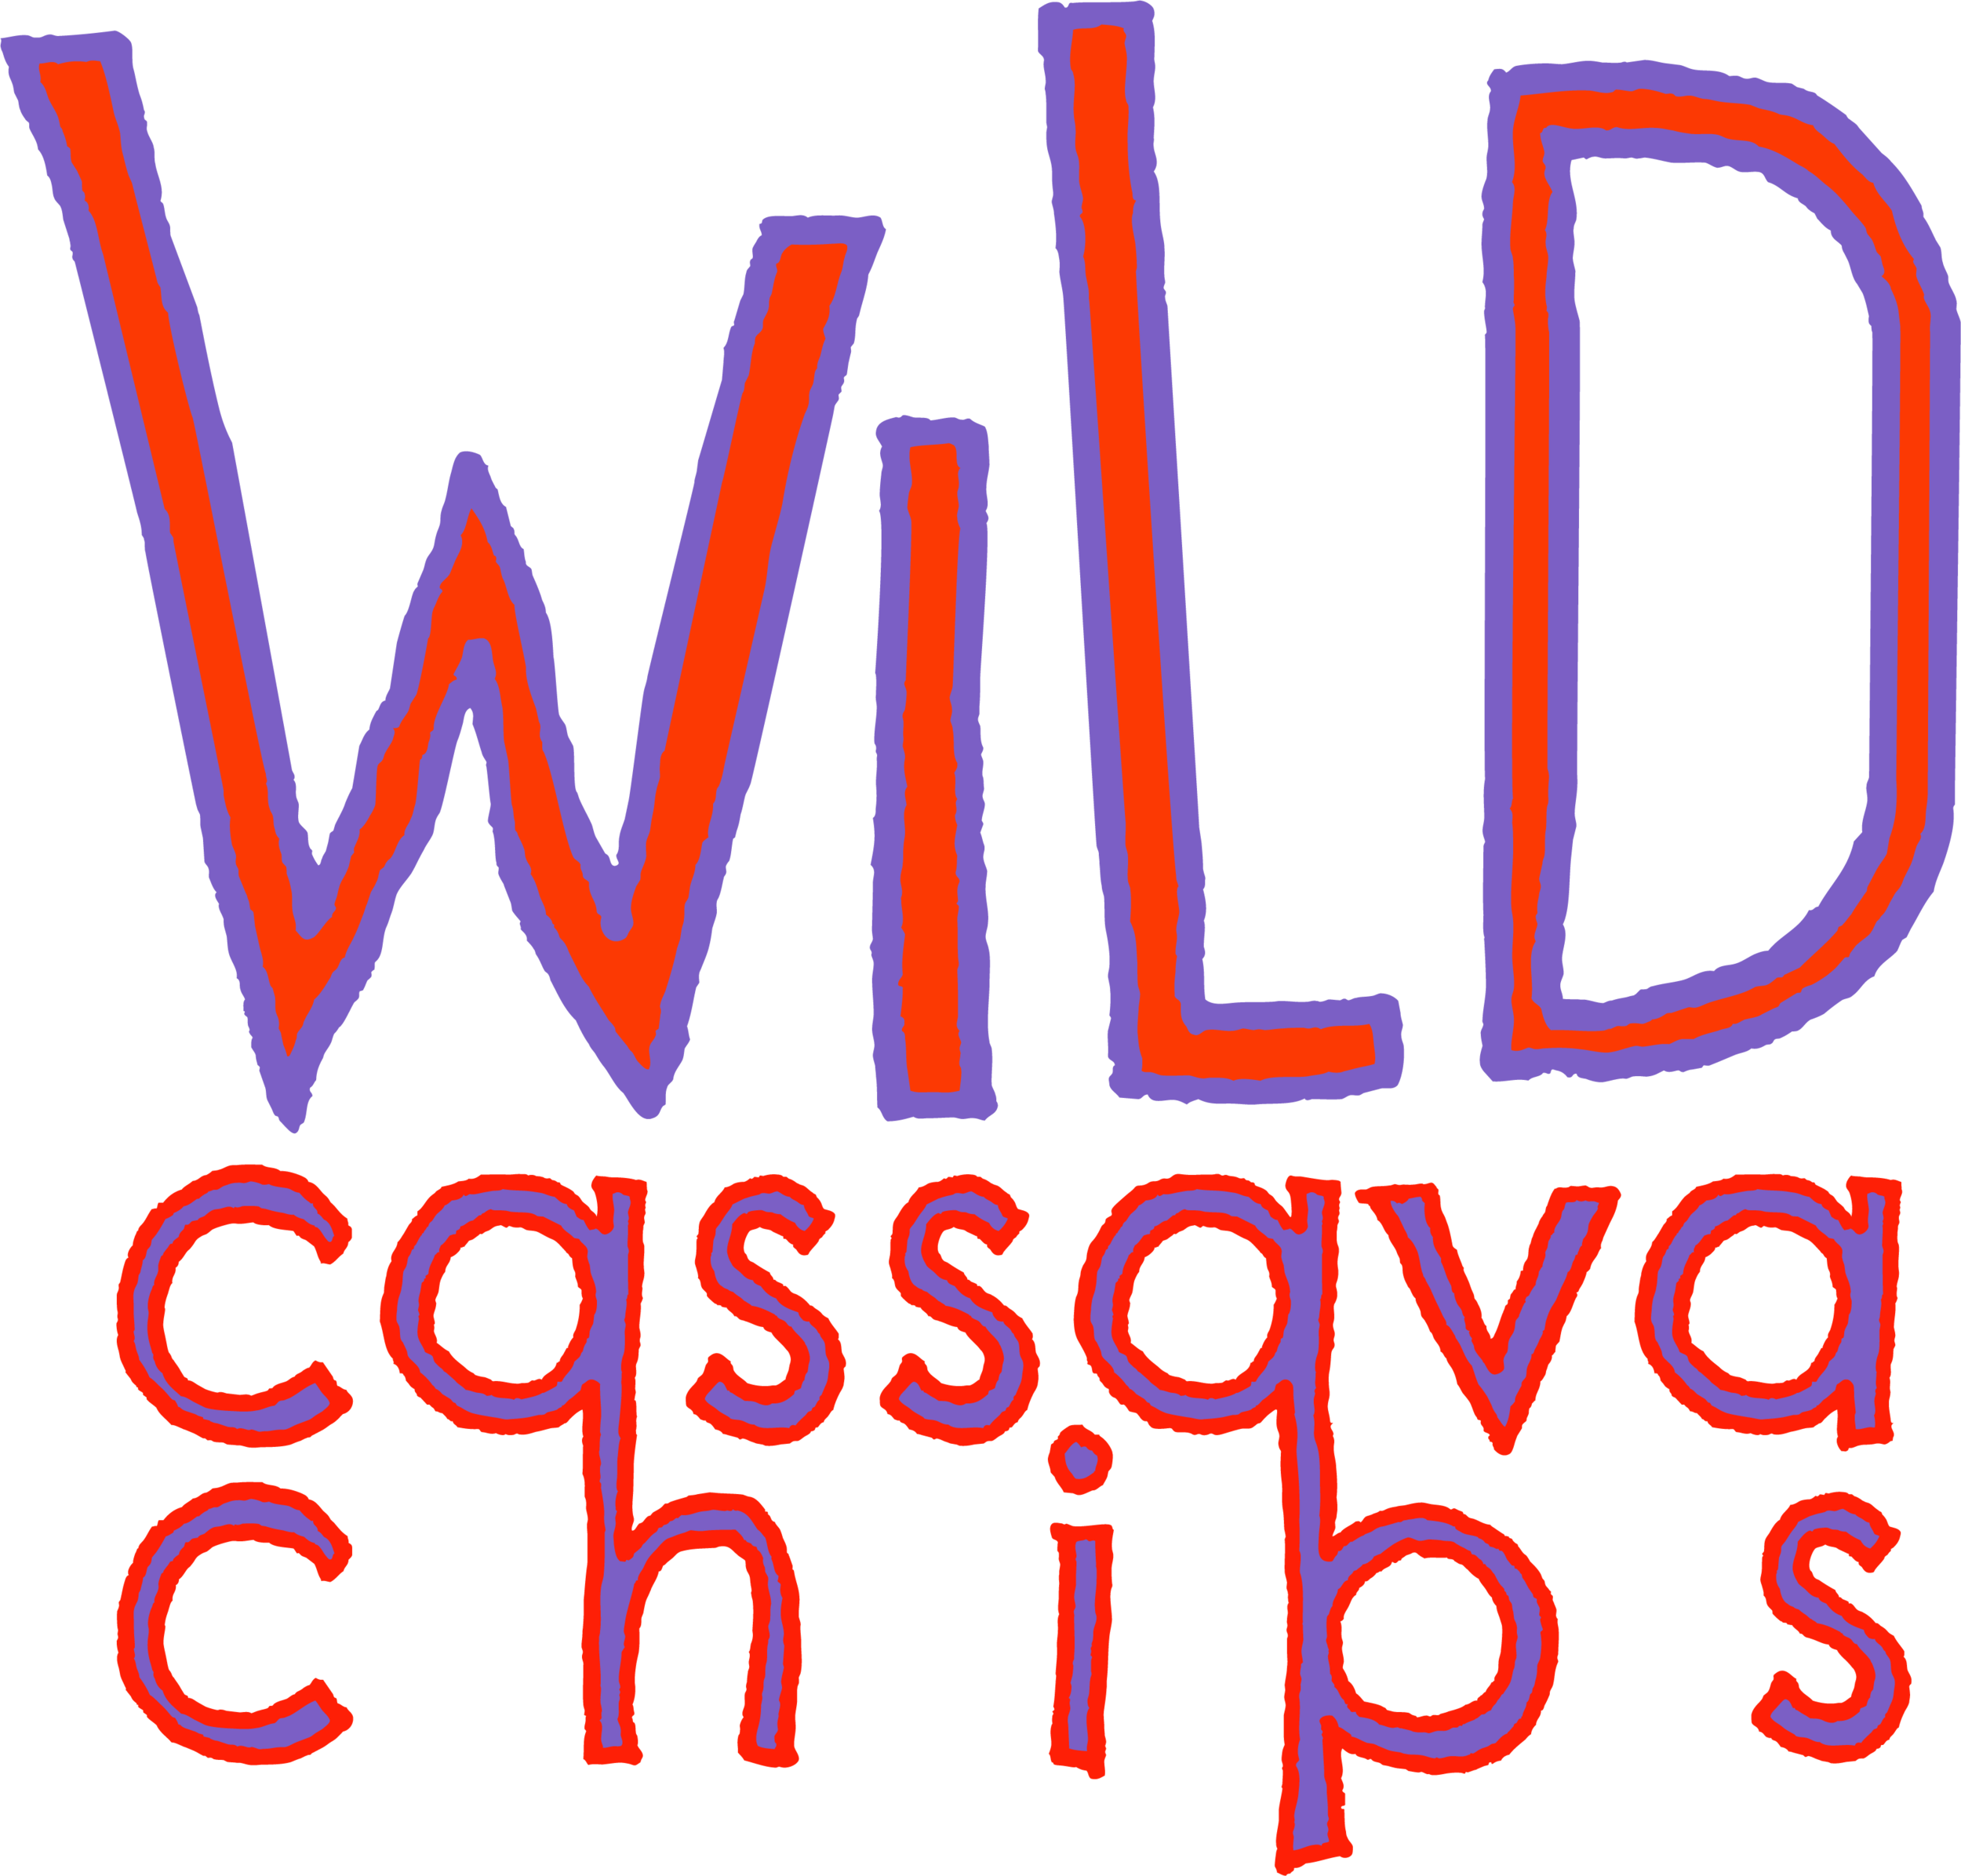 Wild Cassava Chips